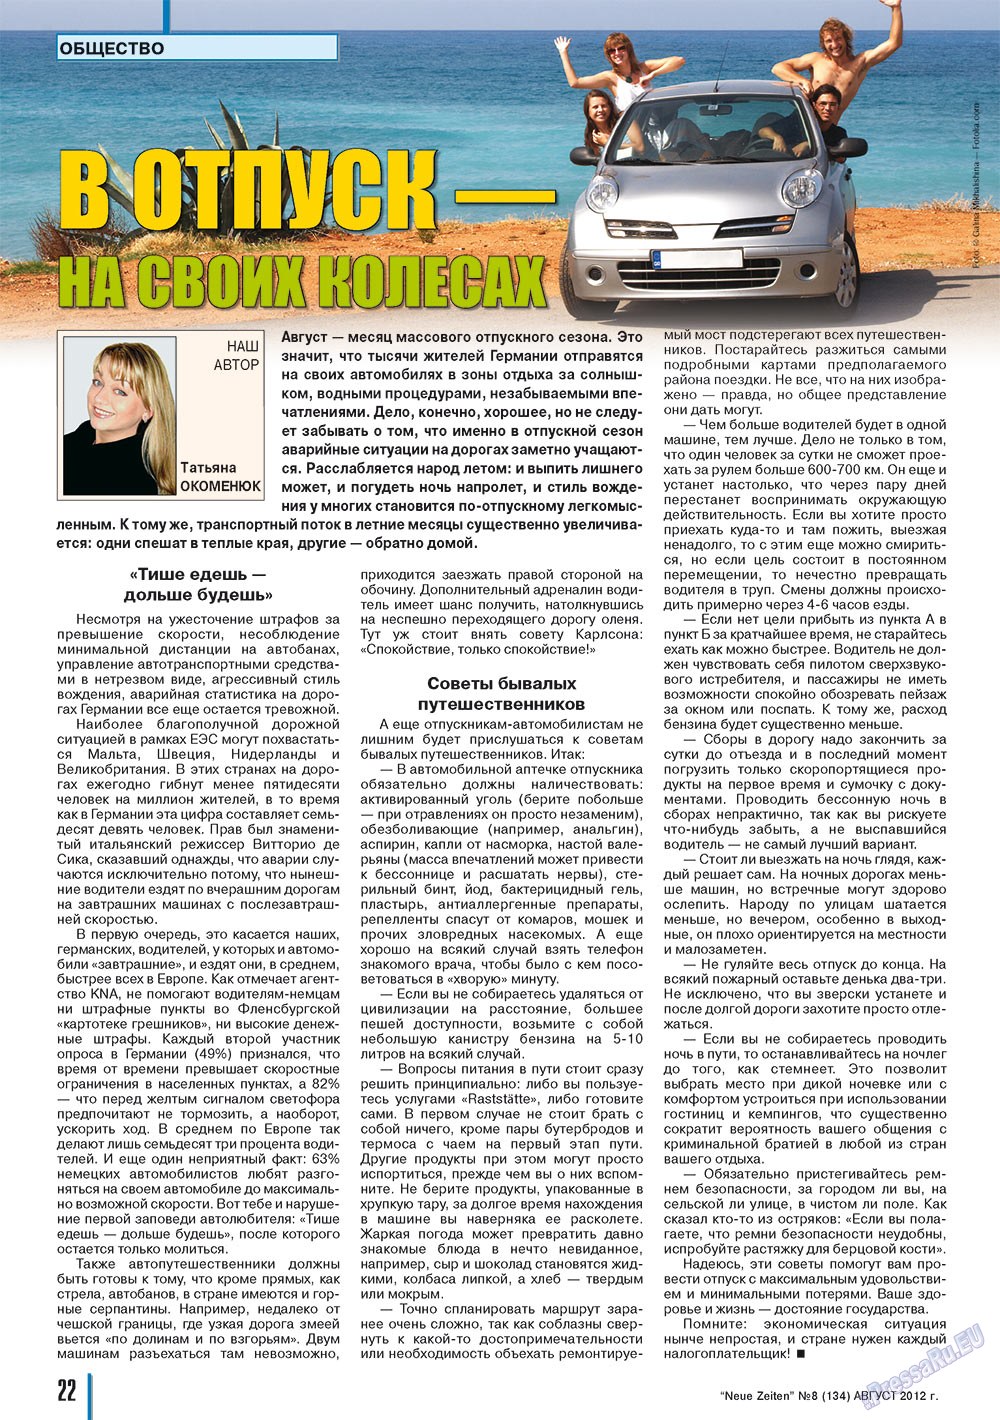 Neue Zeiten, журнал. 2012 №8 стр.22